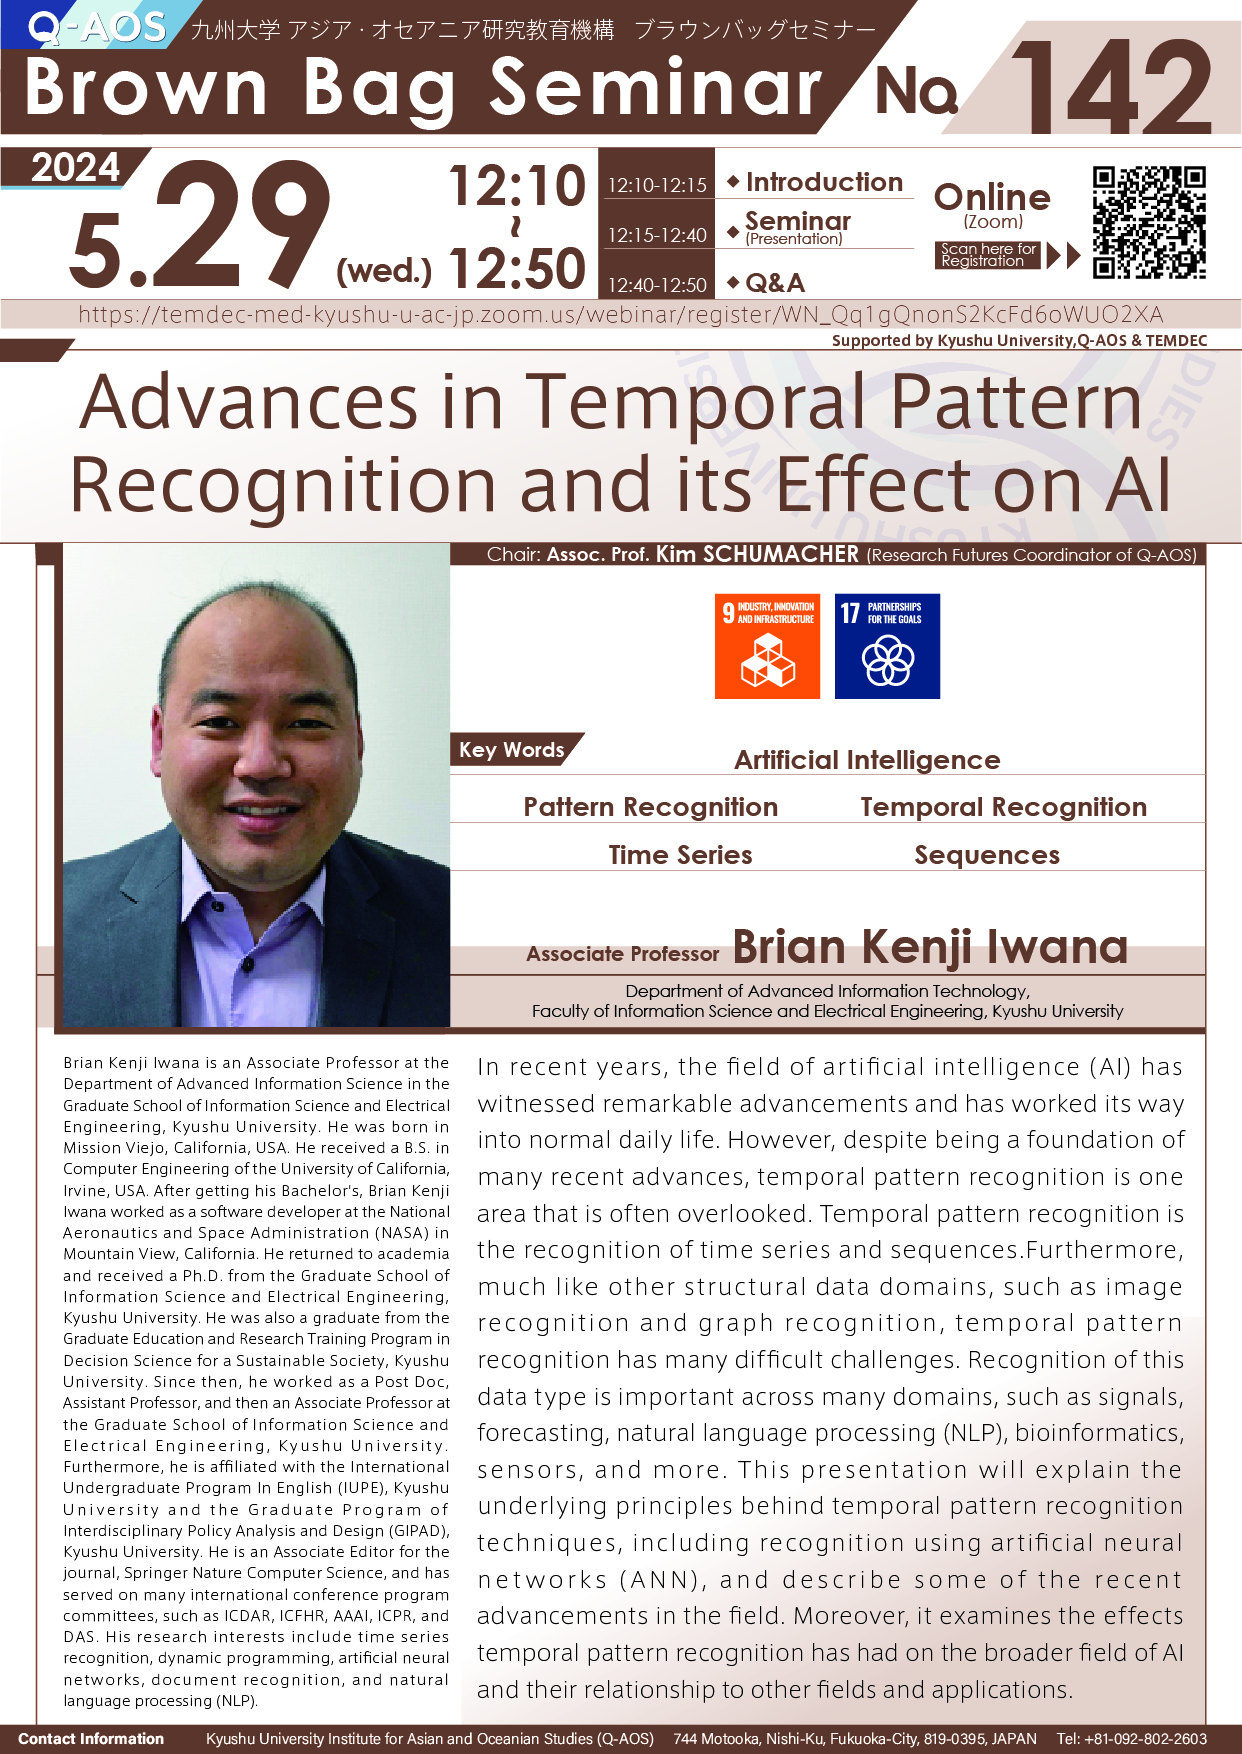 アイキャッチ画像：Q-AOS Brown Bag Seminar Series The 142th Seminar “Advances in Temporal Pattern Recognition and its Effect on AI”